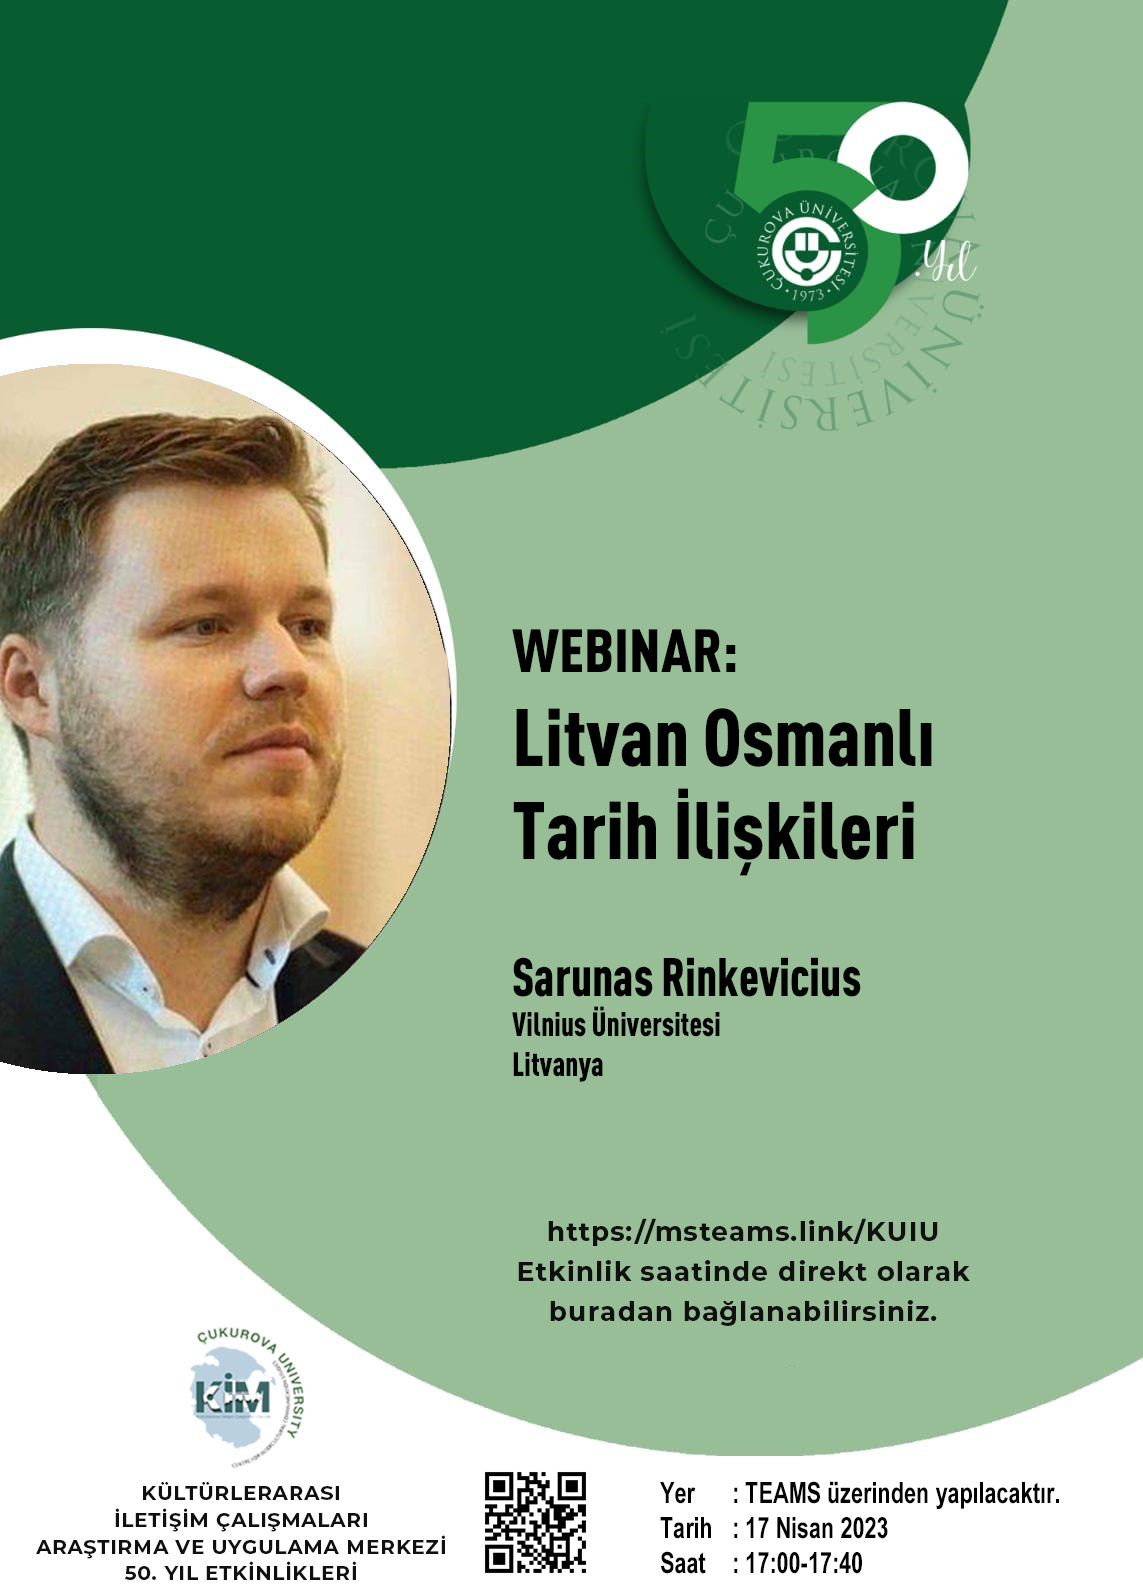 KİM Webinar: Sarunas Rinkevicius - "Litvan Osmanlı Tarih İlişkileri"